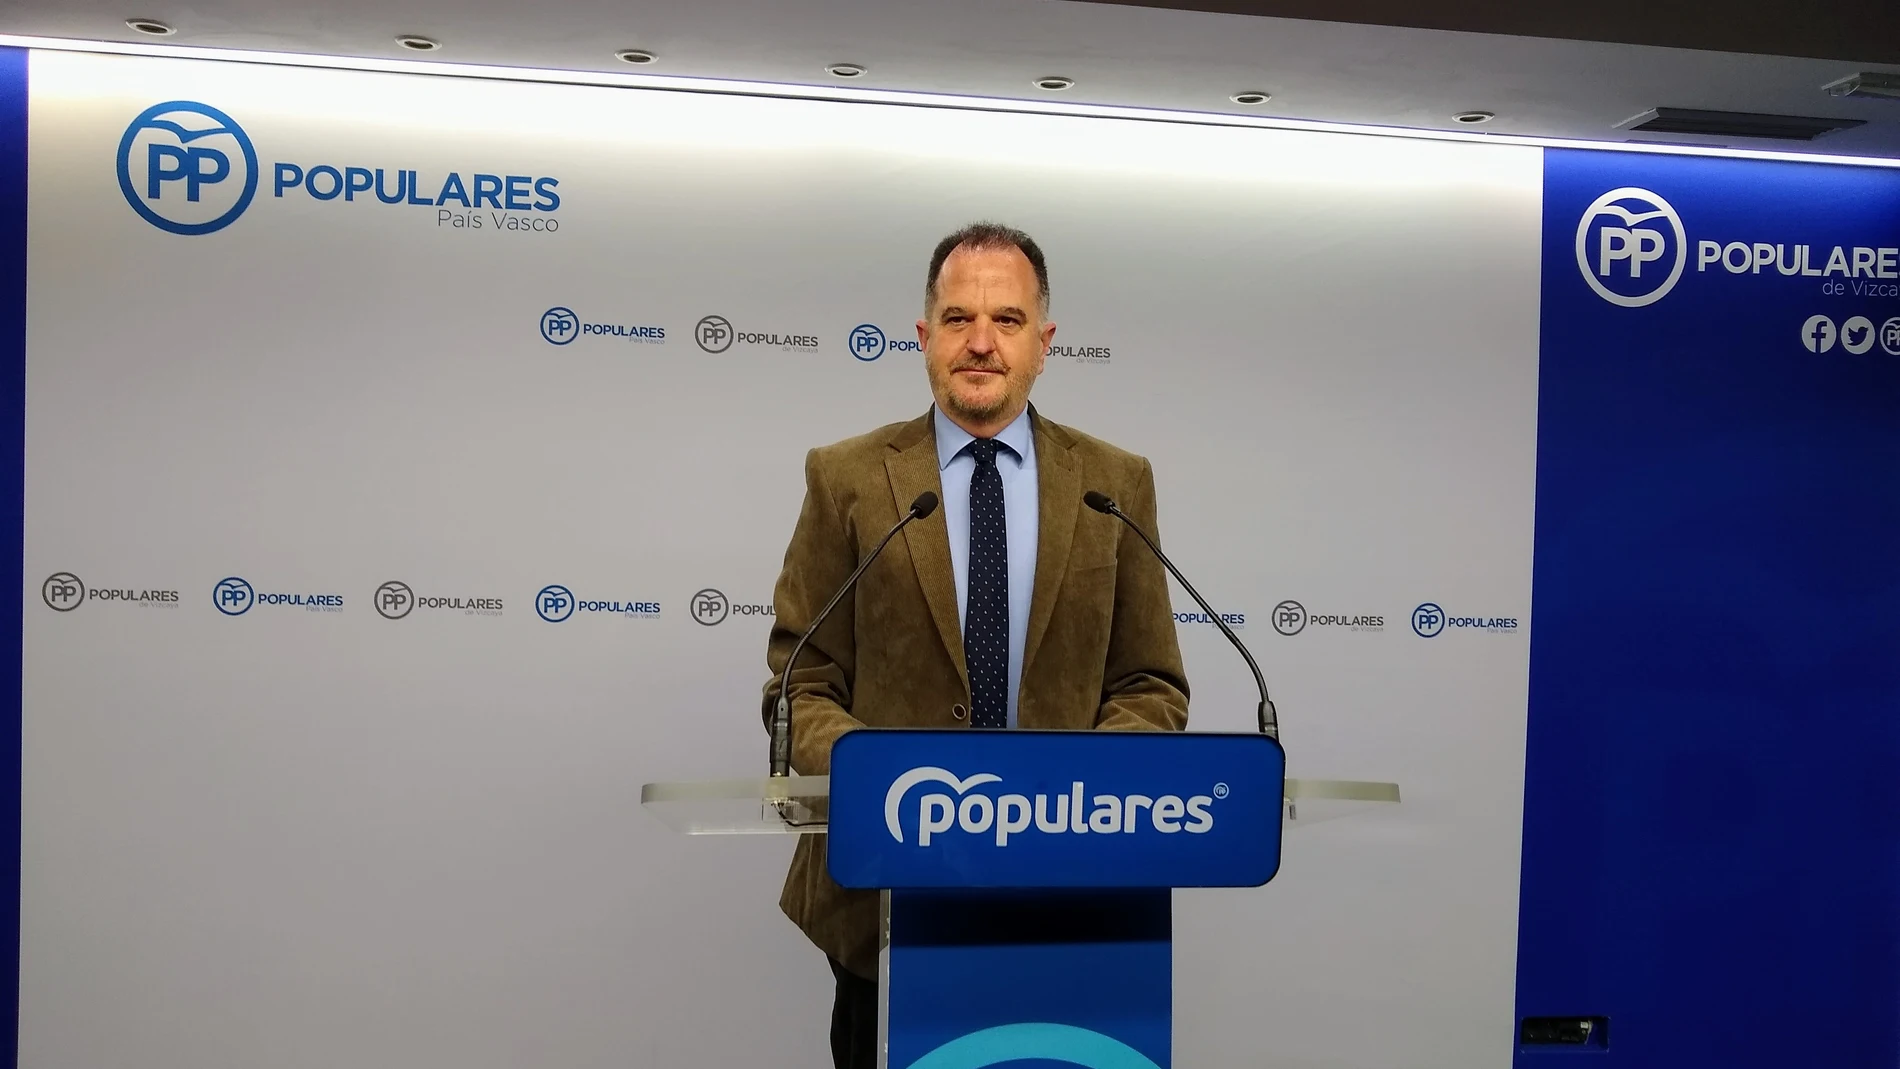 Carlos Iturgaiz
Europa Press
27/12/2021